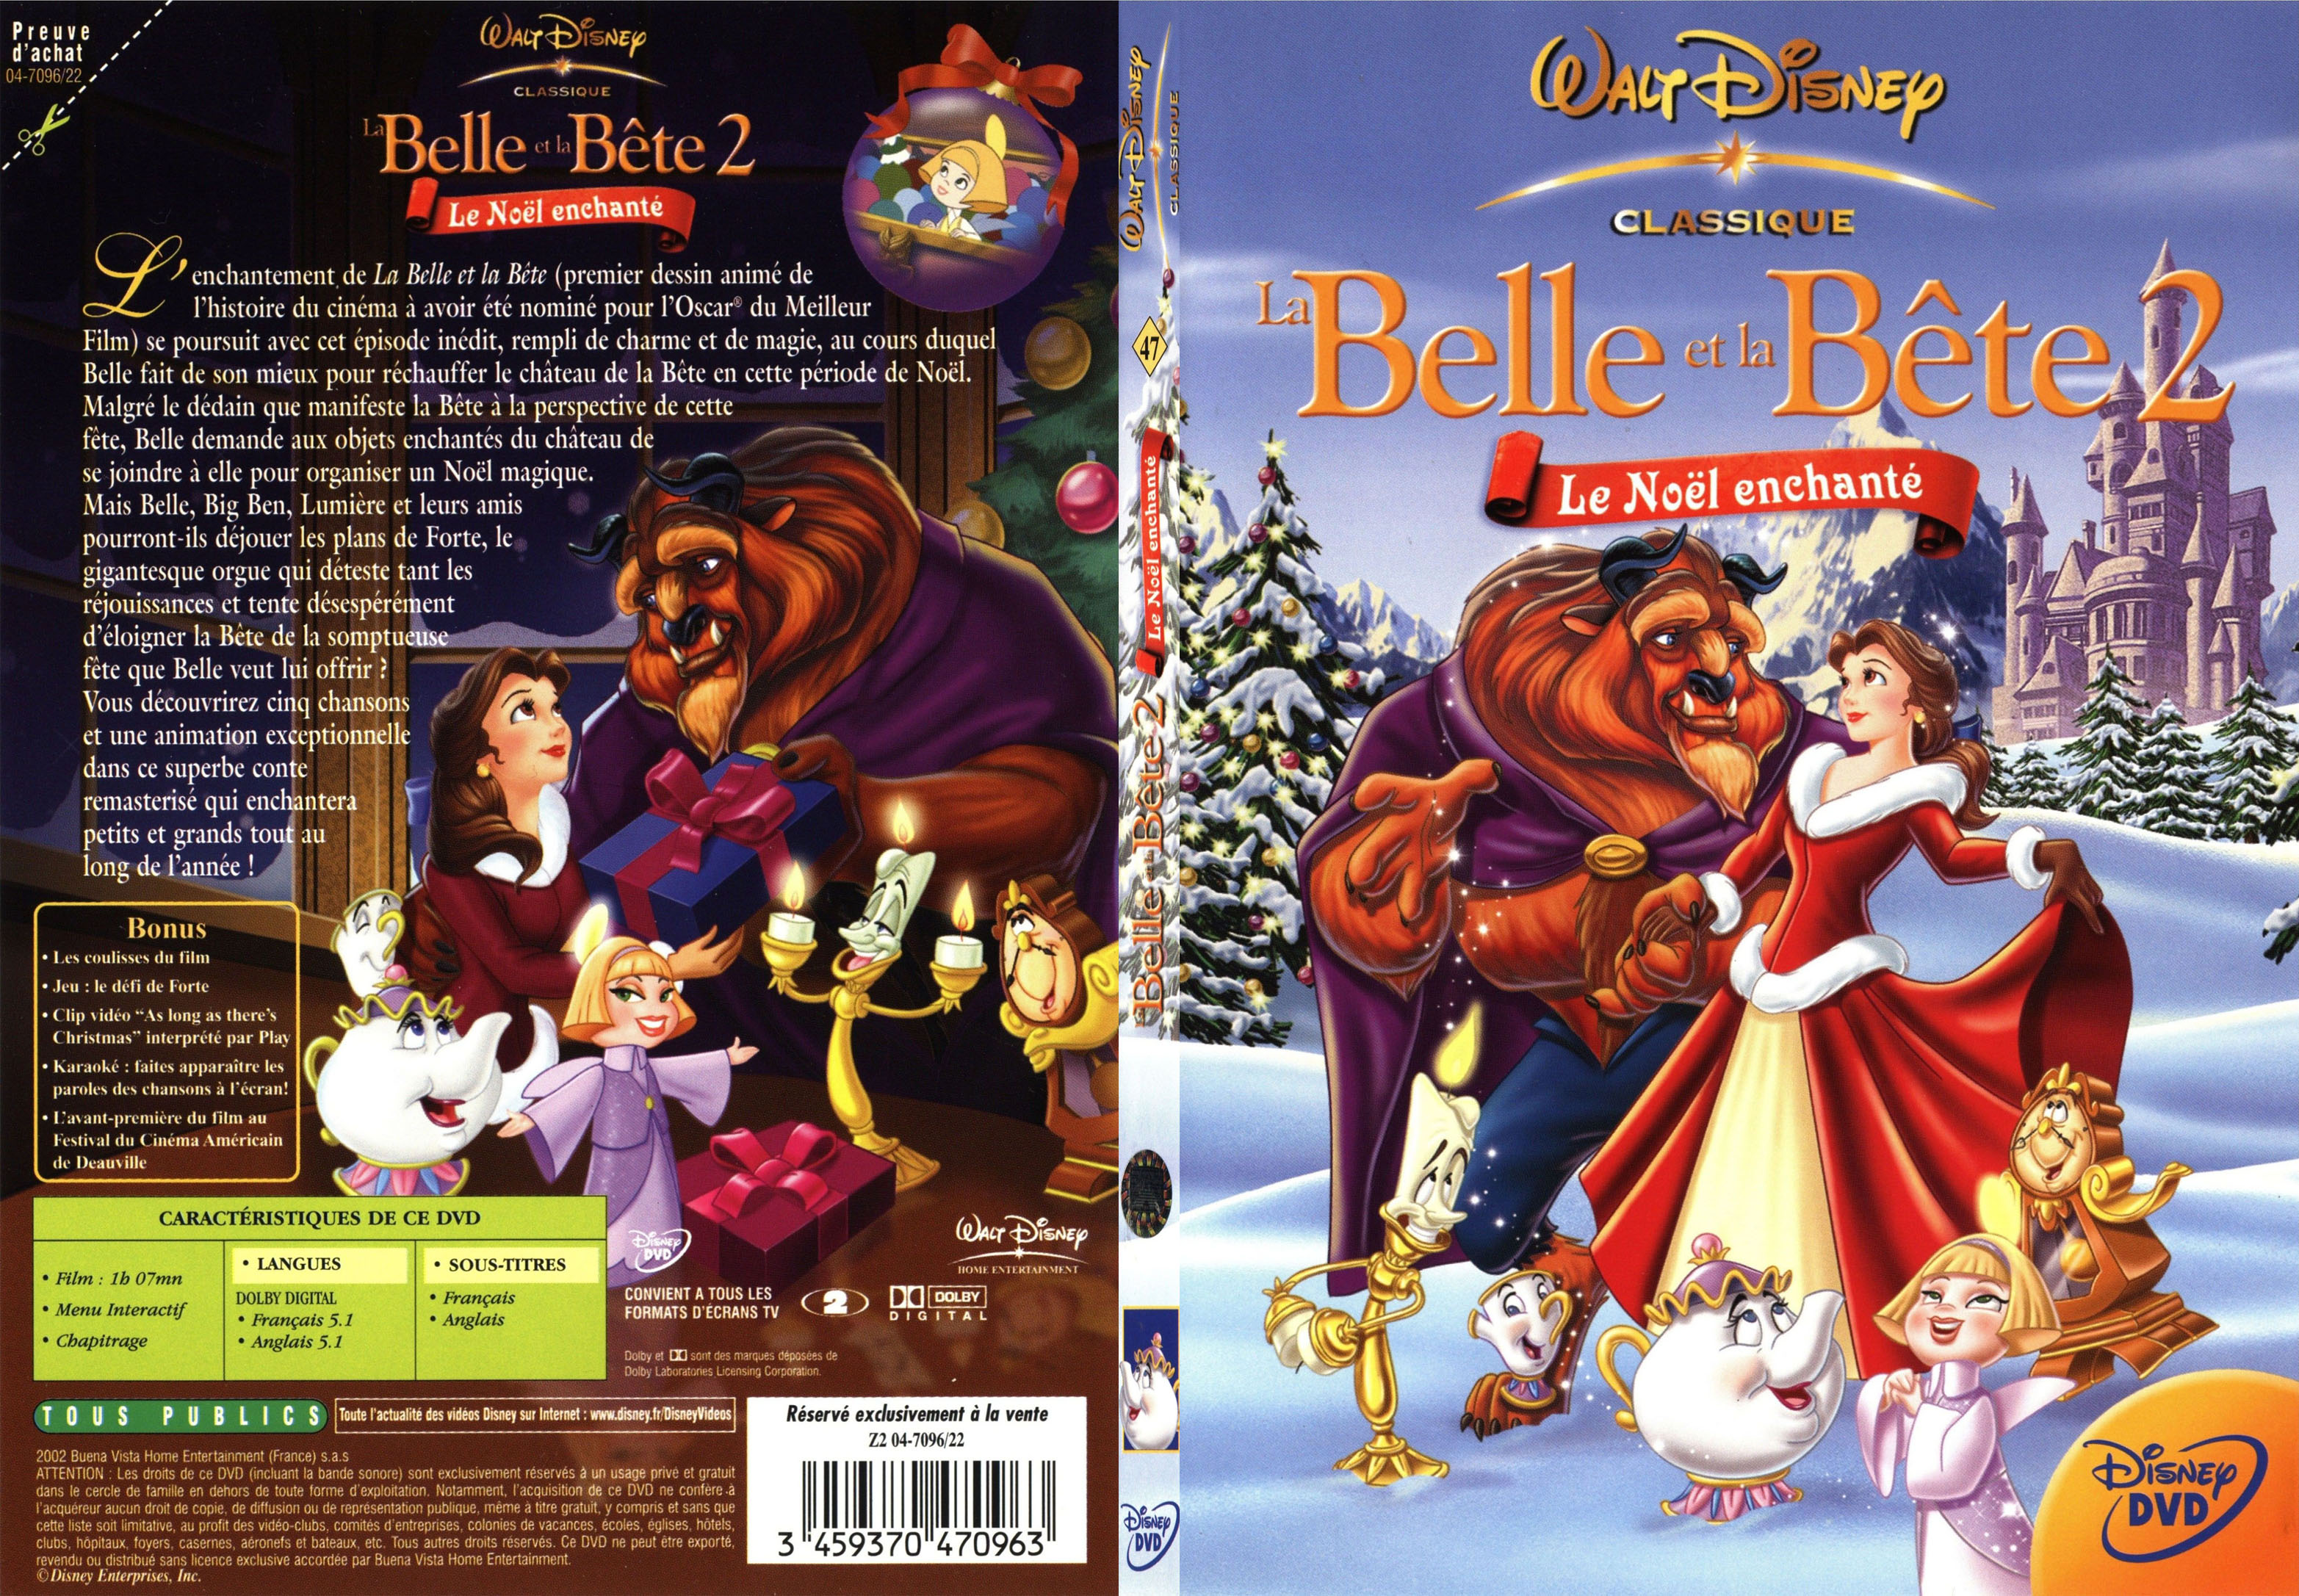 Jaquette DVD La belle et la bete 2 - SLIM